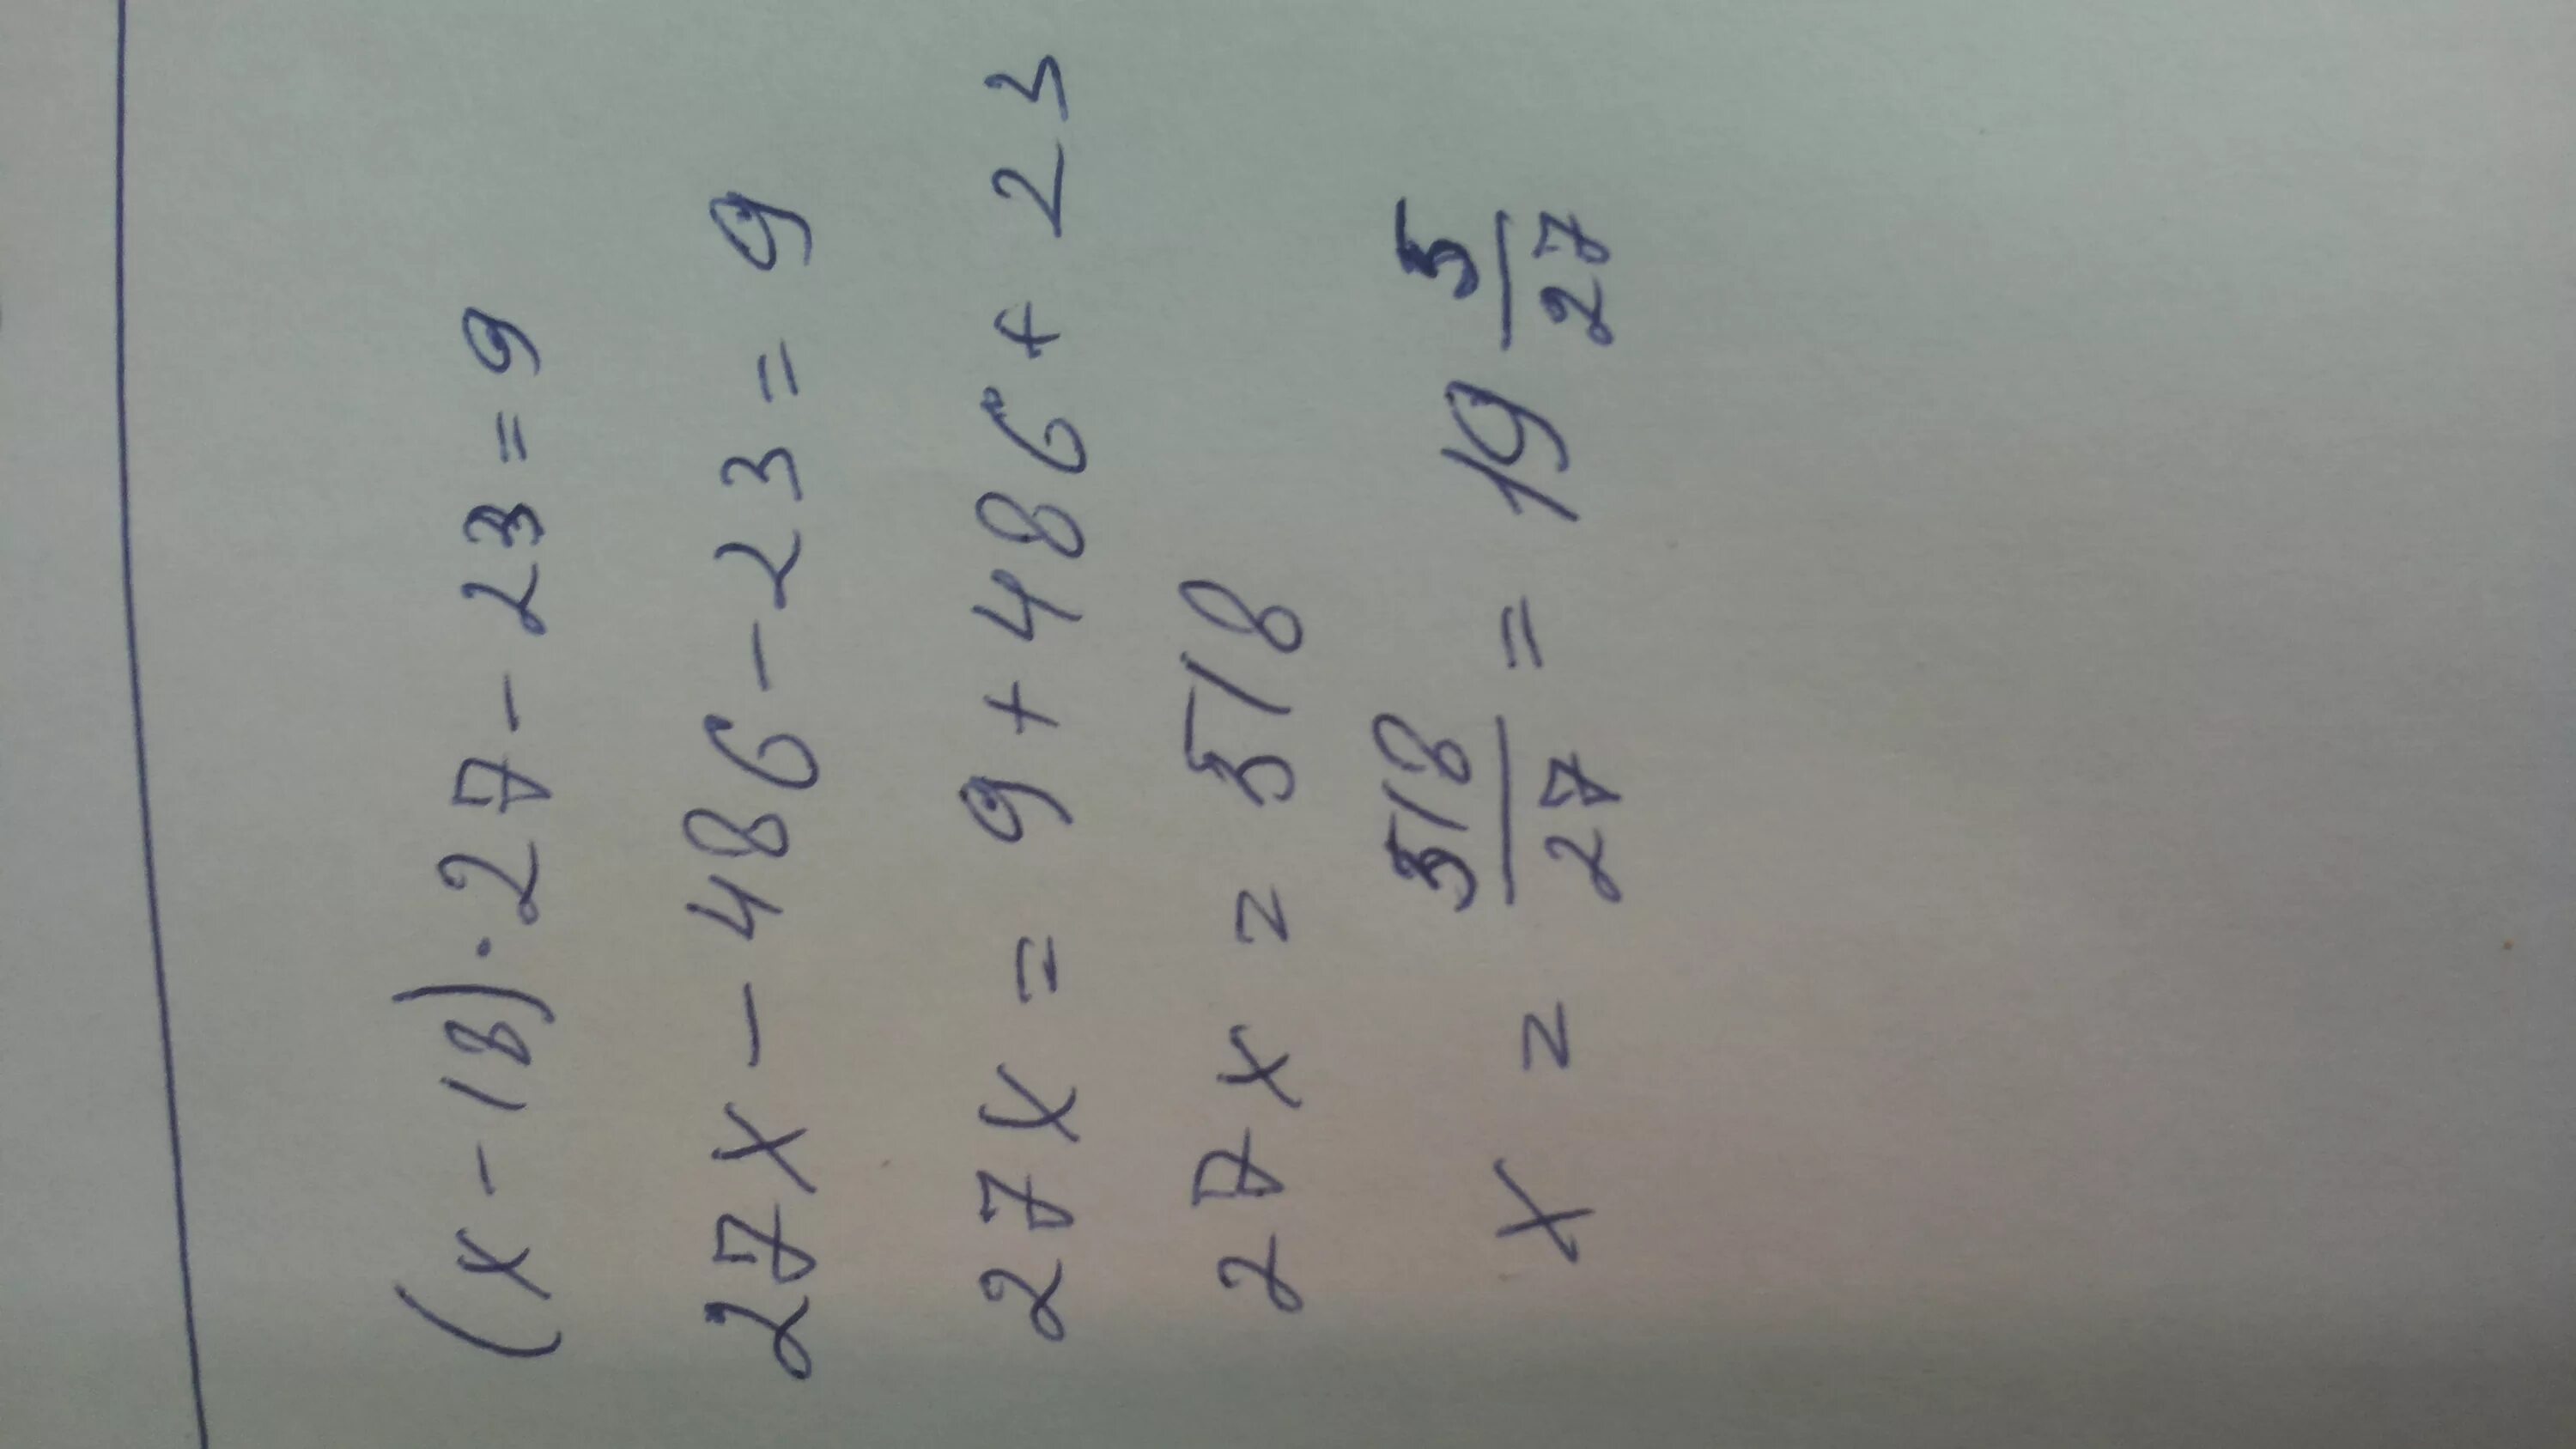 (Х-18)+27-23=9. Йцукенгшщзхъфывапролджэячсмитьбюё что это такое. Х – 87) – 27 = 3. (X-23)+27=87 решение.